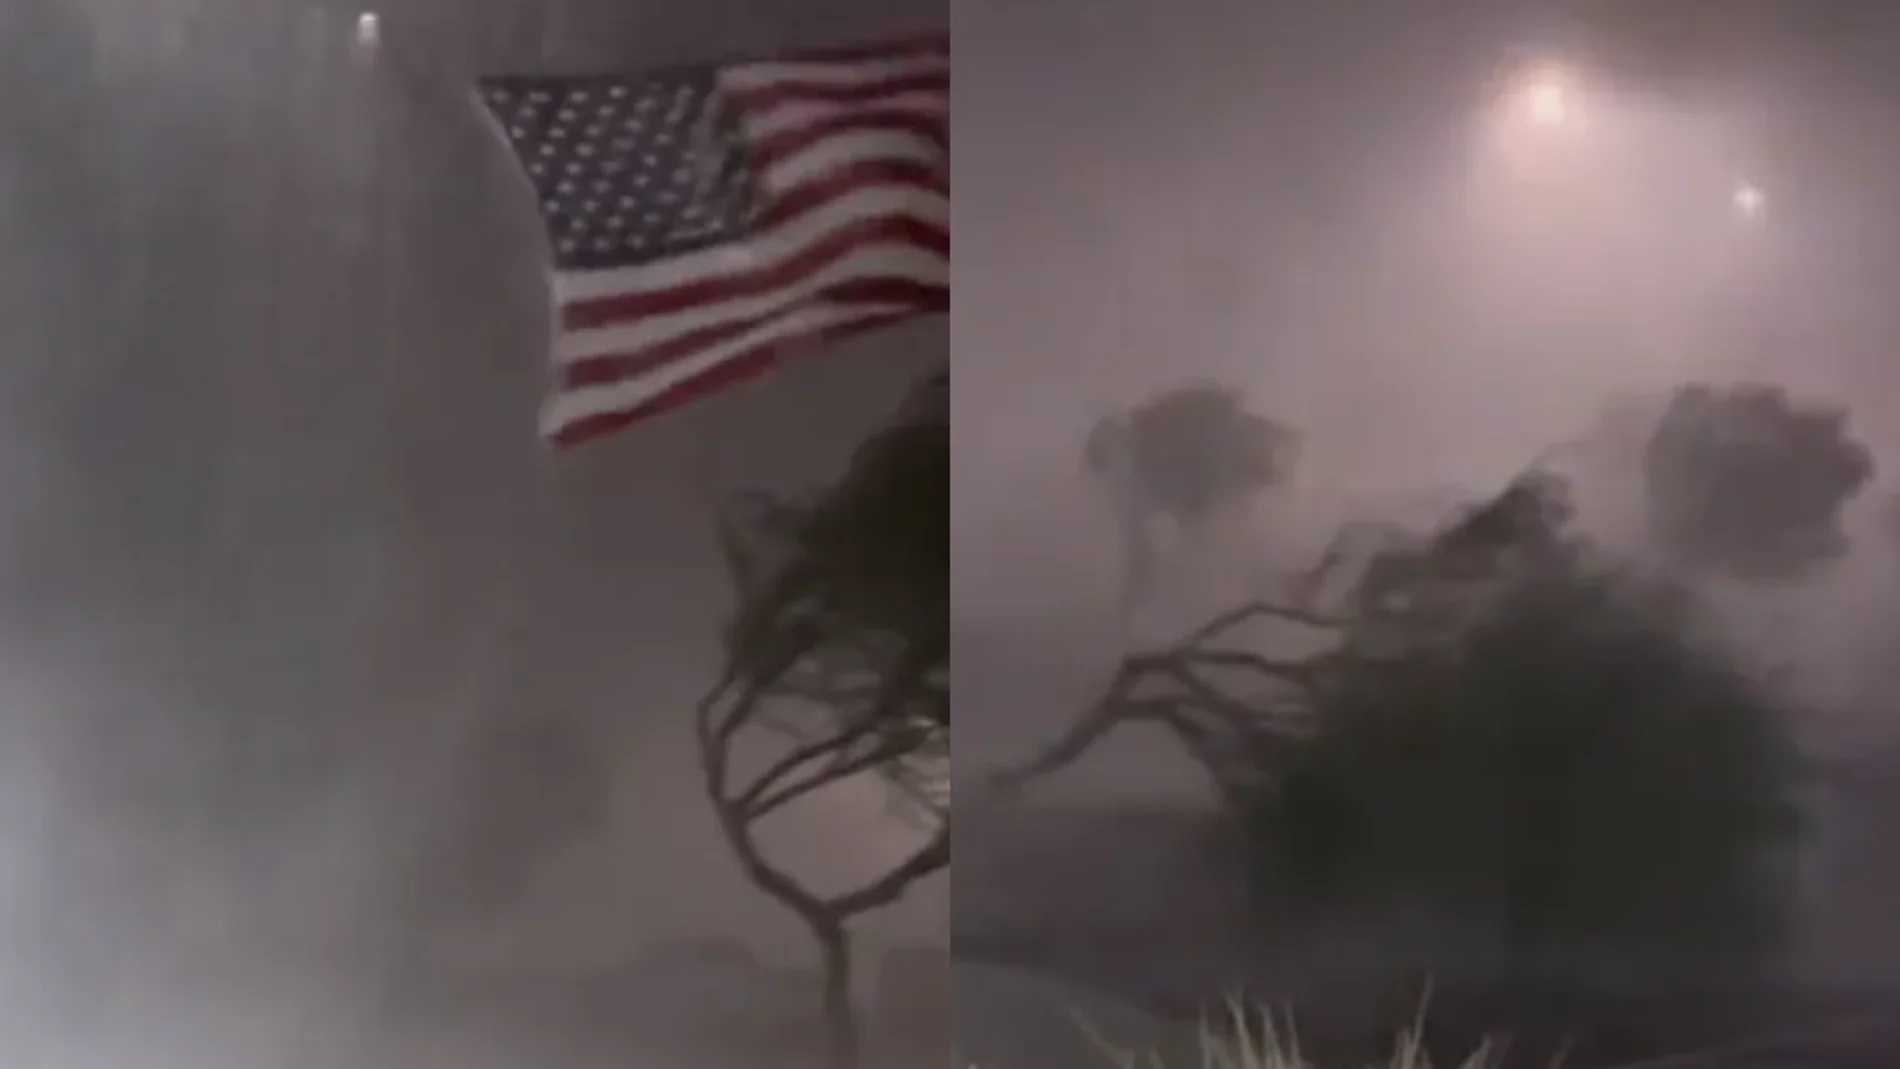 Impactantes vídeos de la tormenta Monzónica que golpeó Arizona